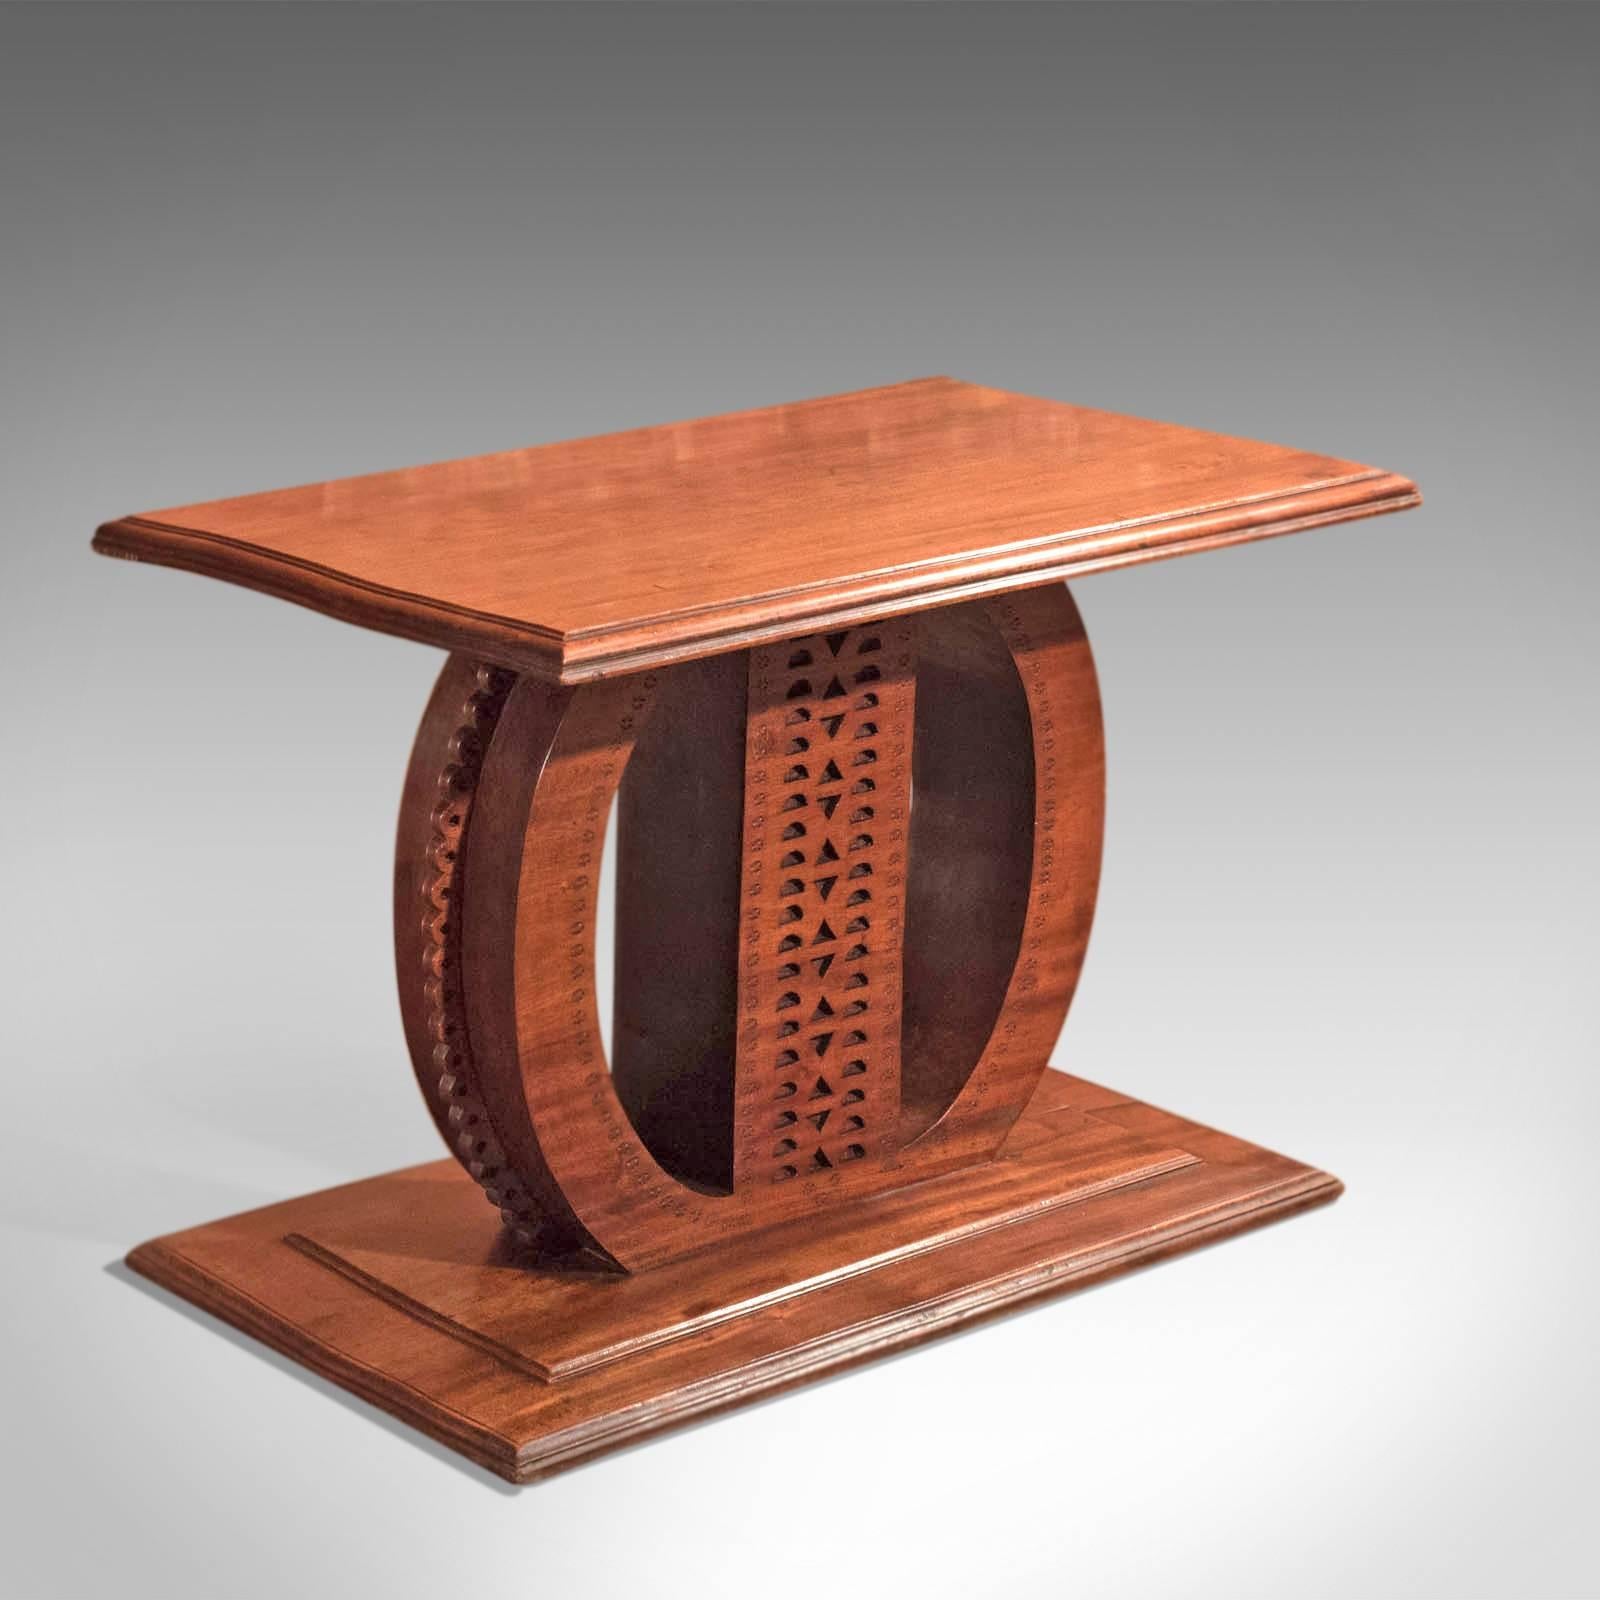 Dies ist ein antiker Hartholztisch aus dem 19. Jahrhundert.

Dieses exotische Stück, das aus einem einzigen Stück Hartholz geschnitzt ist, ist ein interessanter Beistell- oder Lampentisch von großem Gewicht.

Der abgestufte Sockel spiegelt das